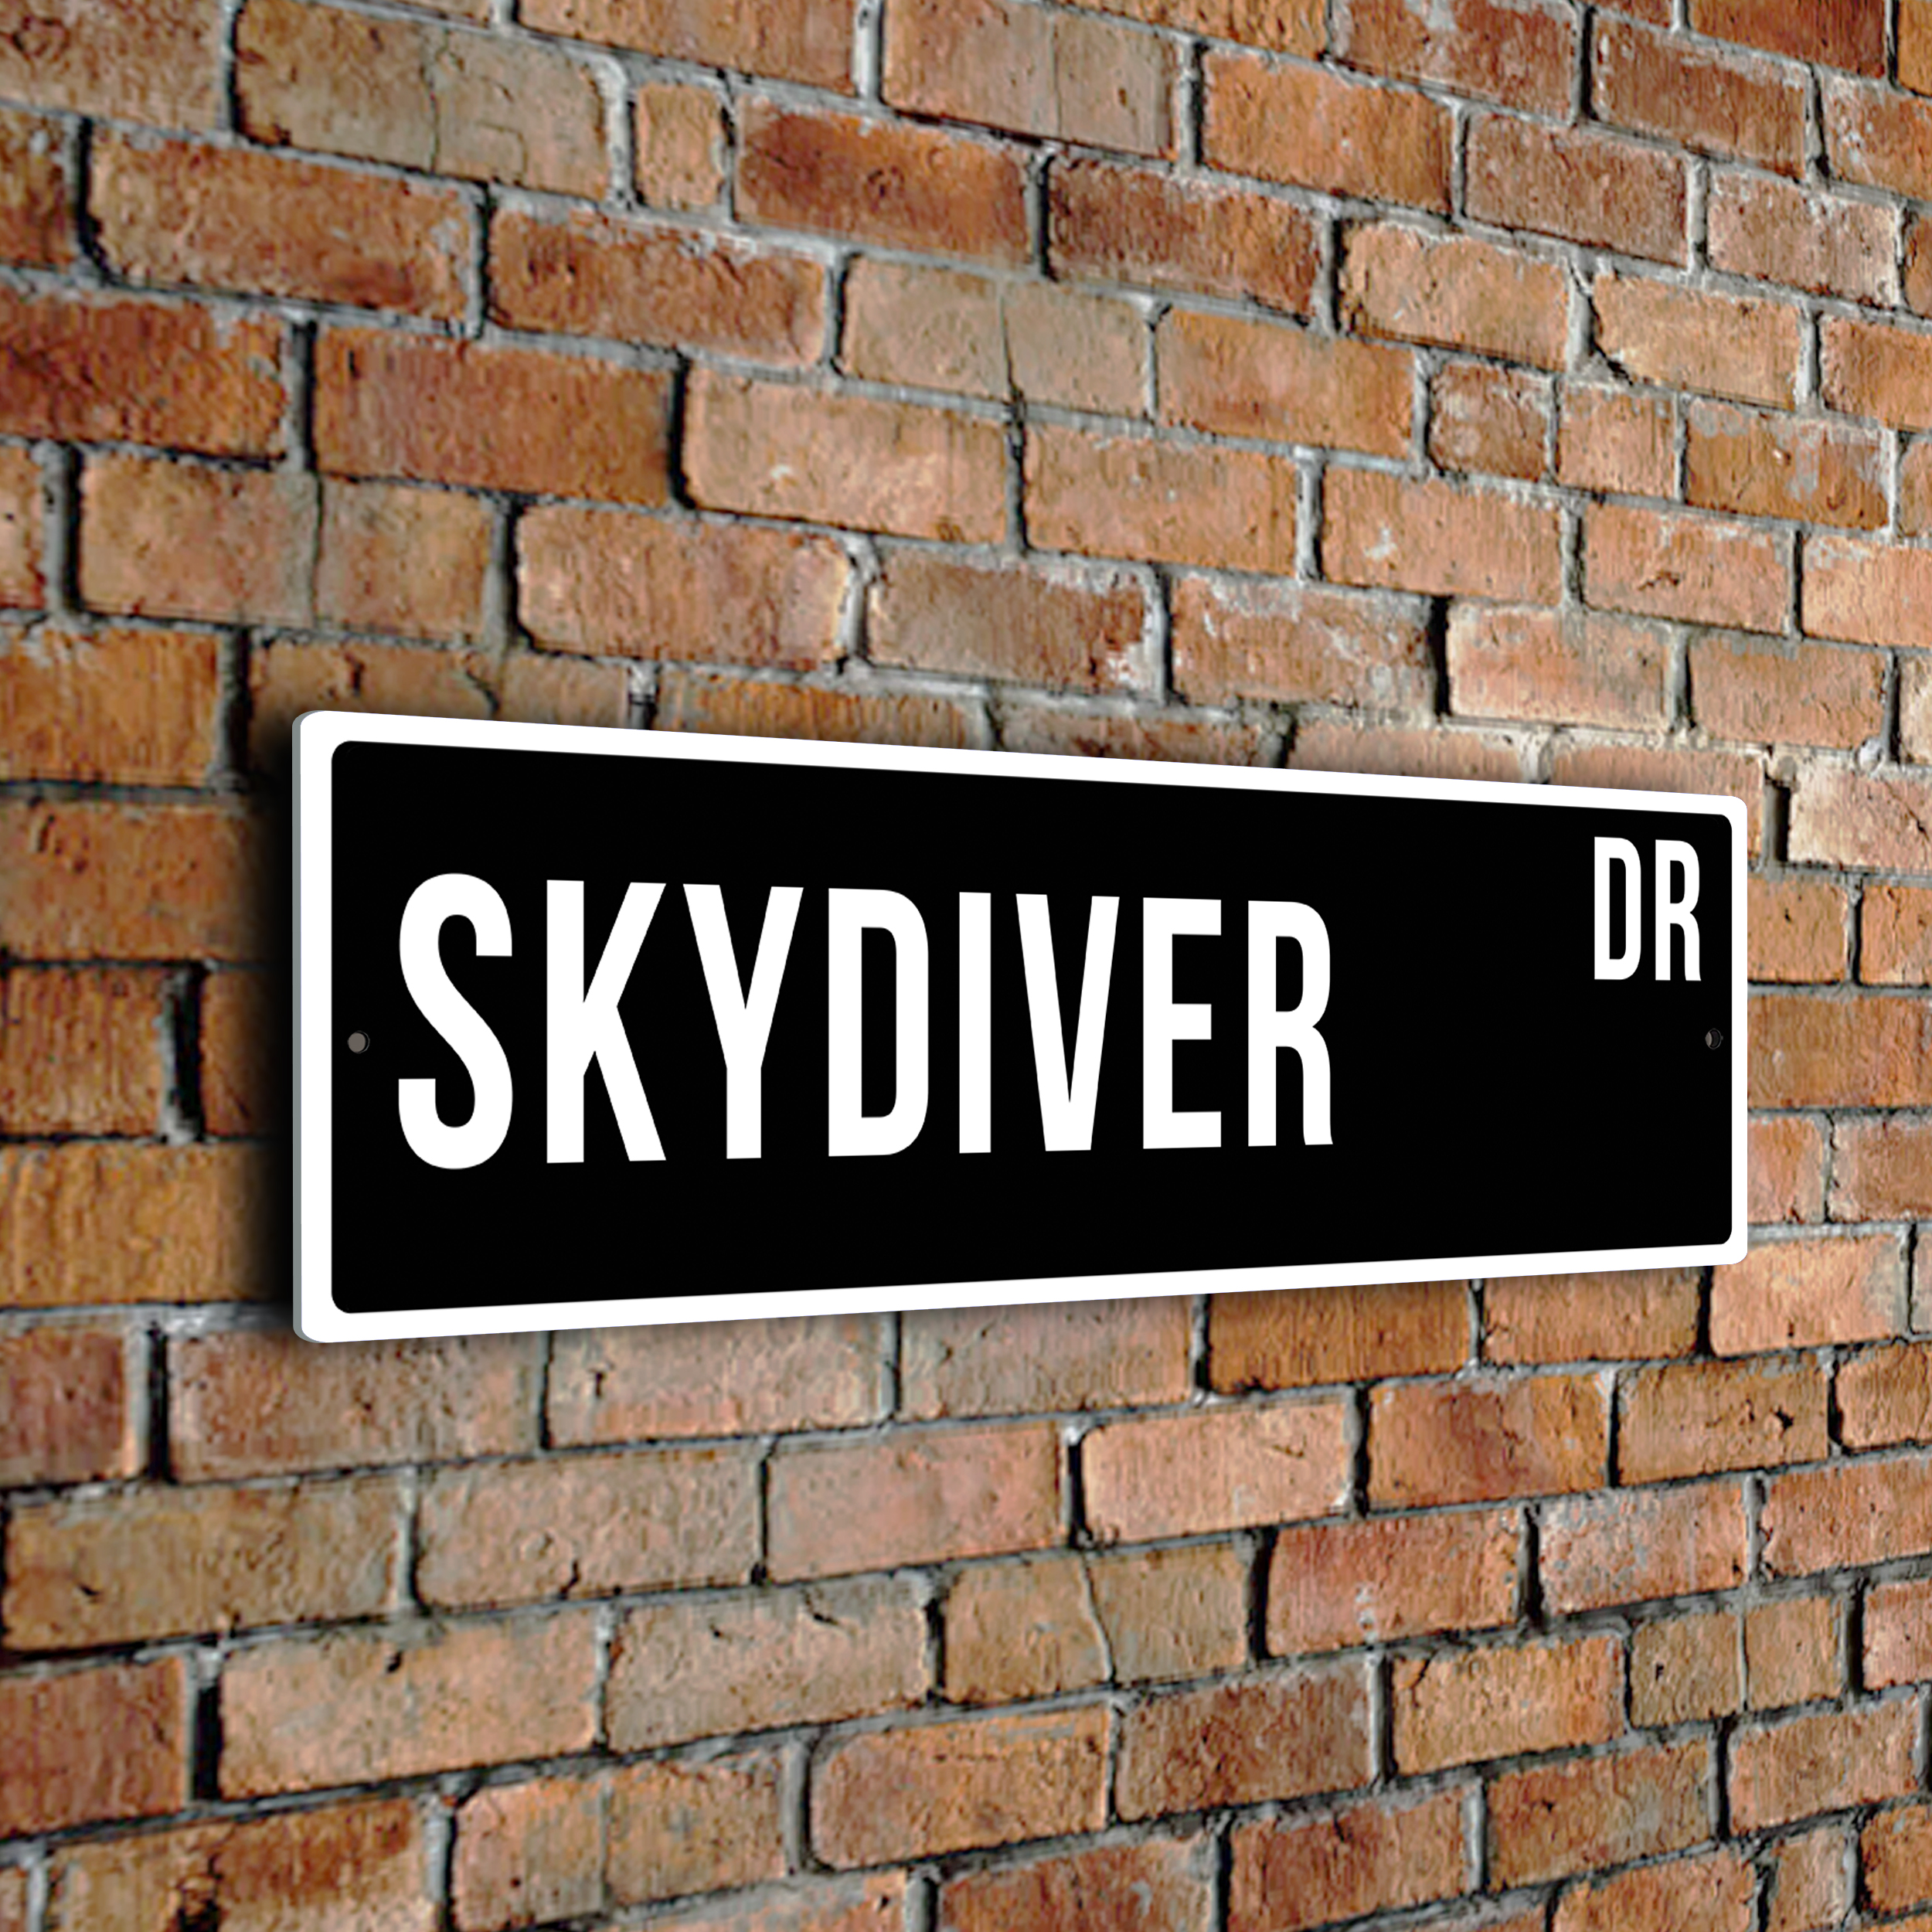 Skydiver street sign